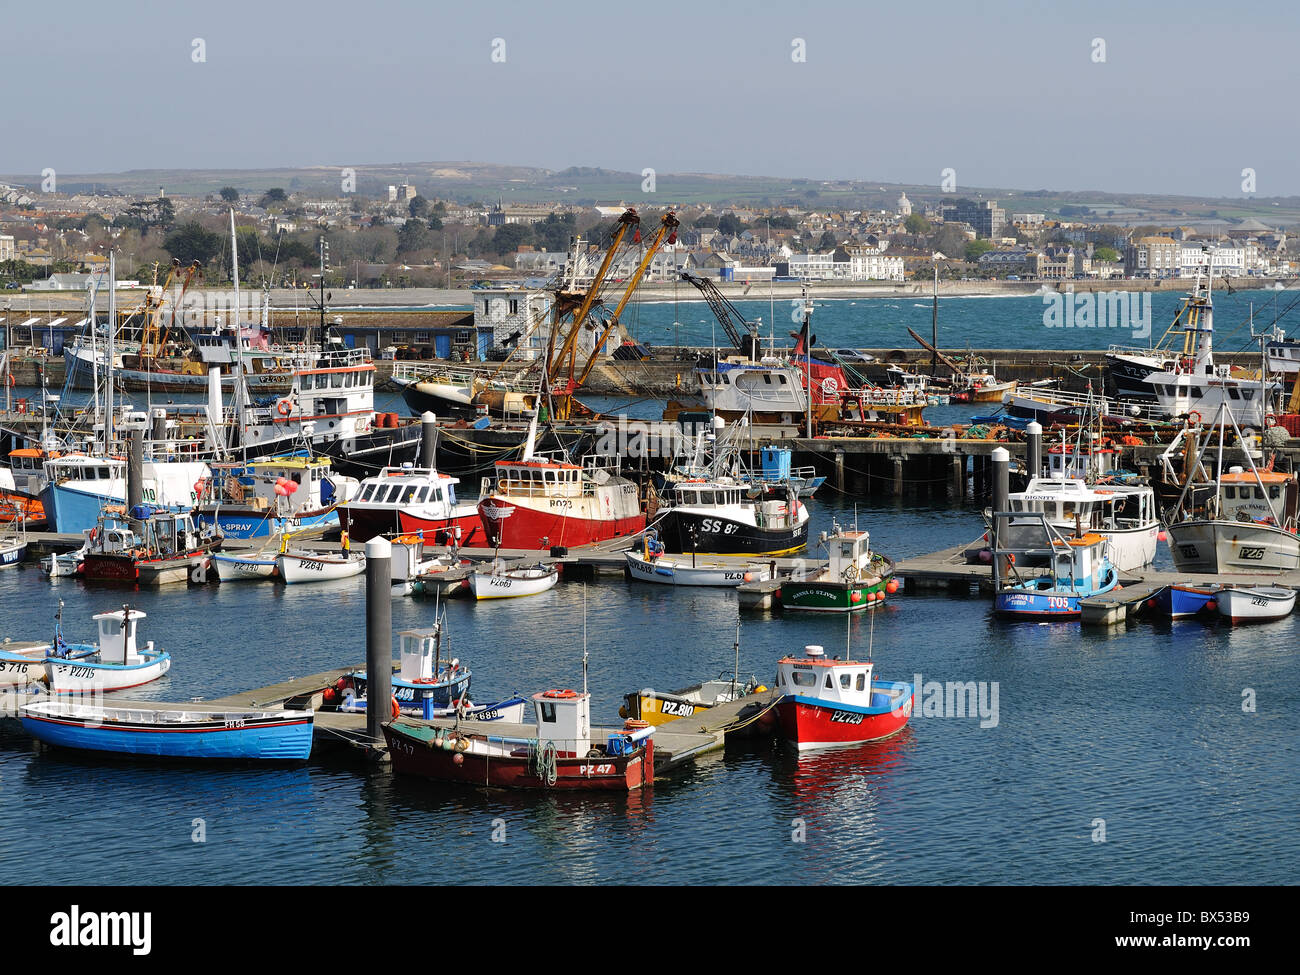 Les chalutiers et bateaux de pêche dans le port de Newlyn, Cornwall, UK Banque D'Images